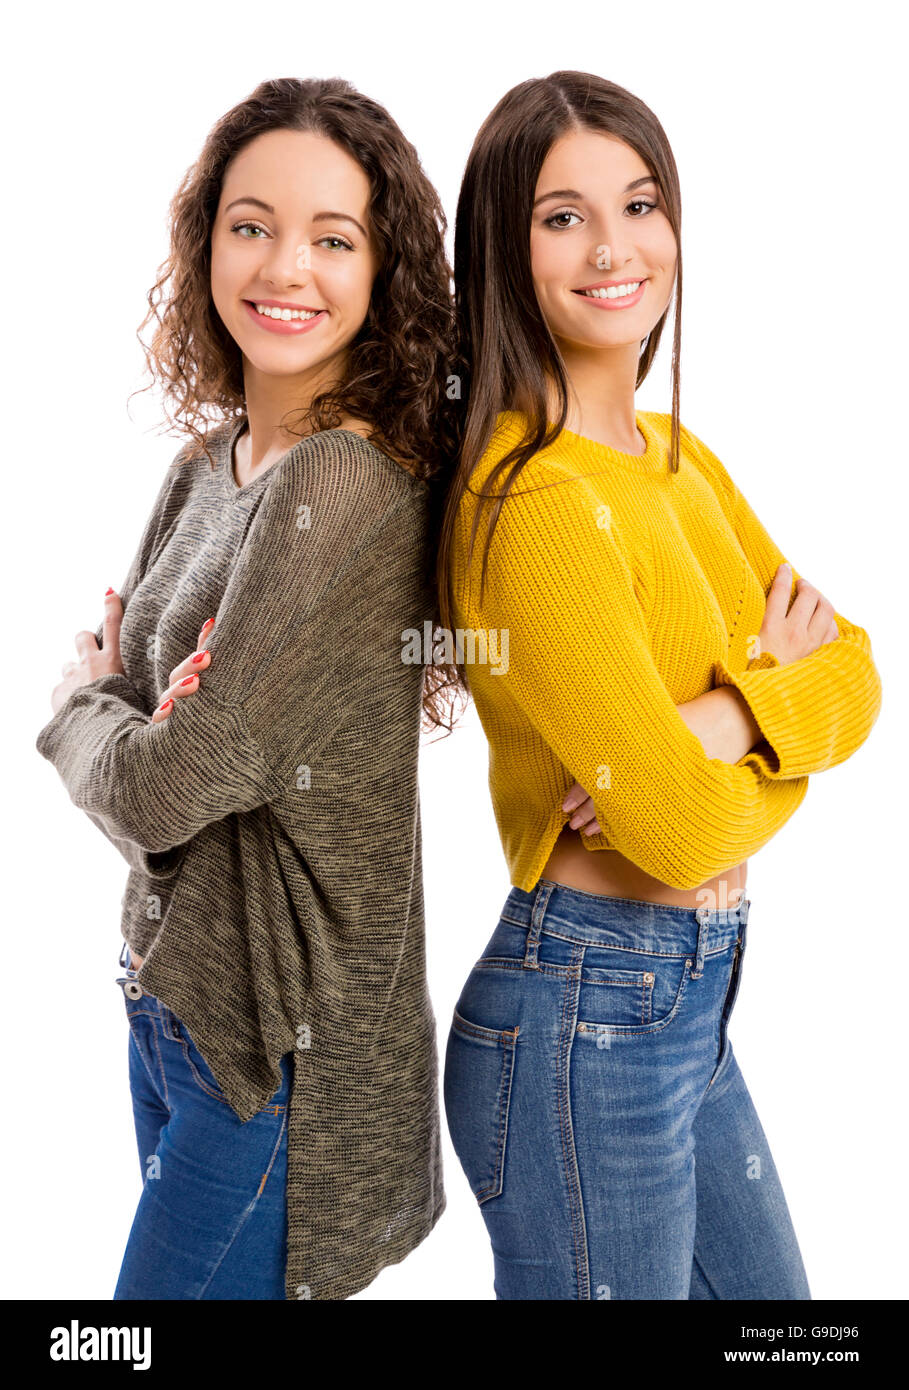 Ritratto in studio di due belle ragazze sorridenti Foto Stock